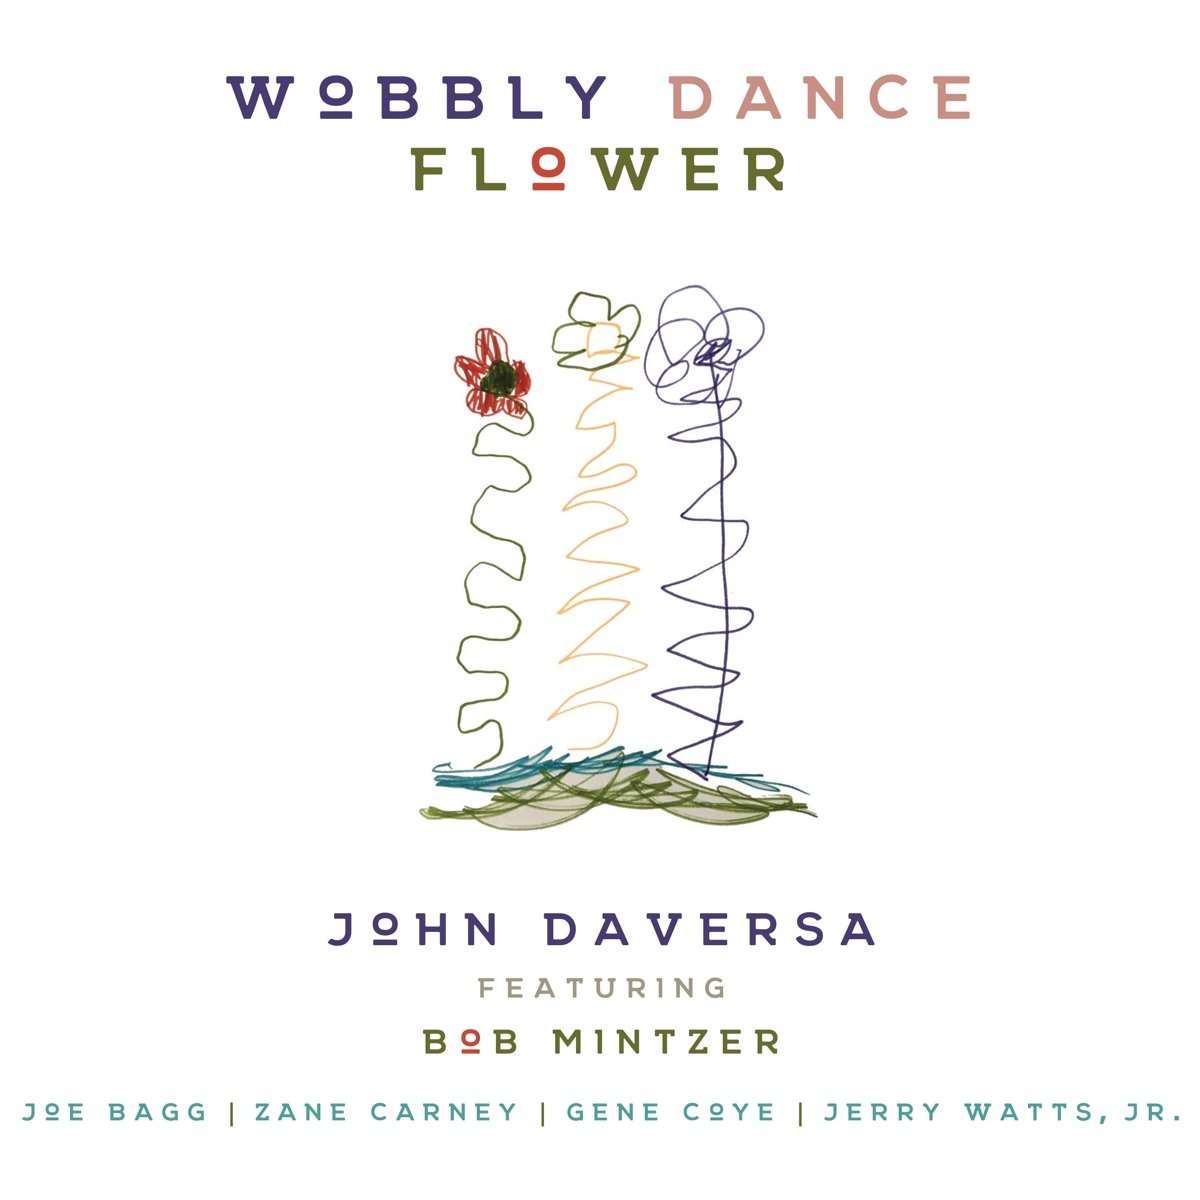 JOHN DAVERSA - Wobbly Dance Flower cover 